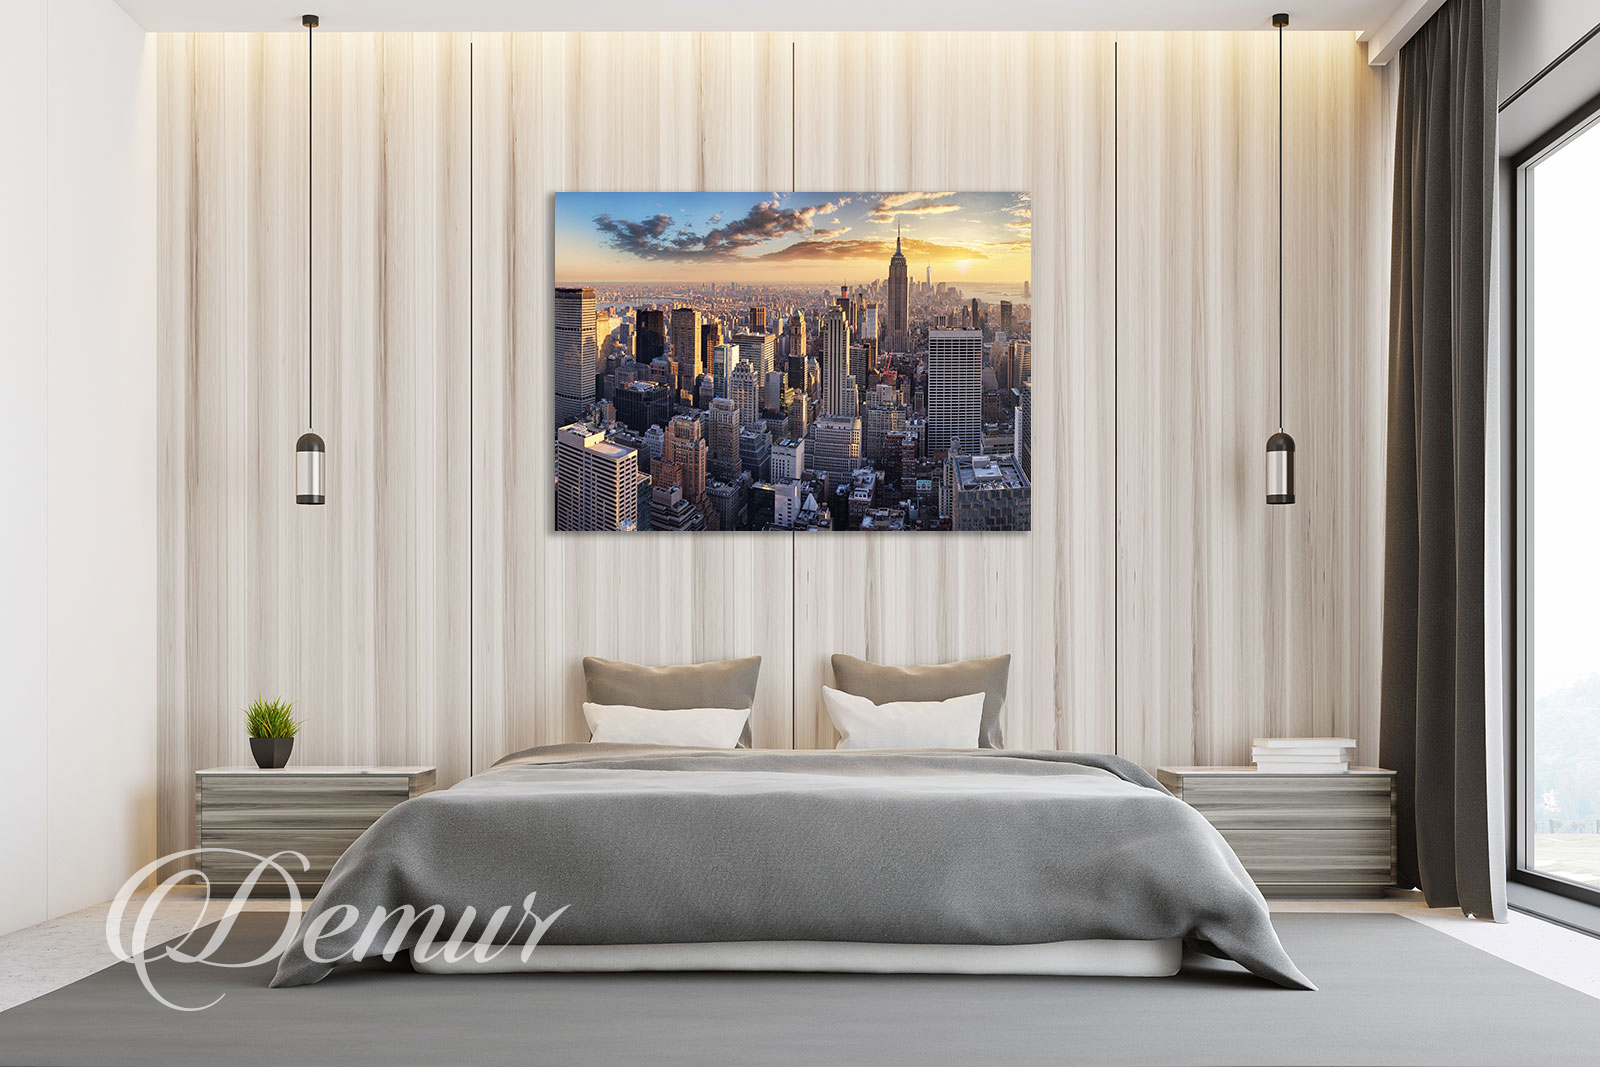 Obraz miasto o zachodzie słońca - Pomysł na ścianę w sypialni - Demur